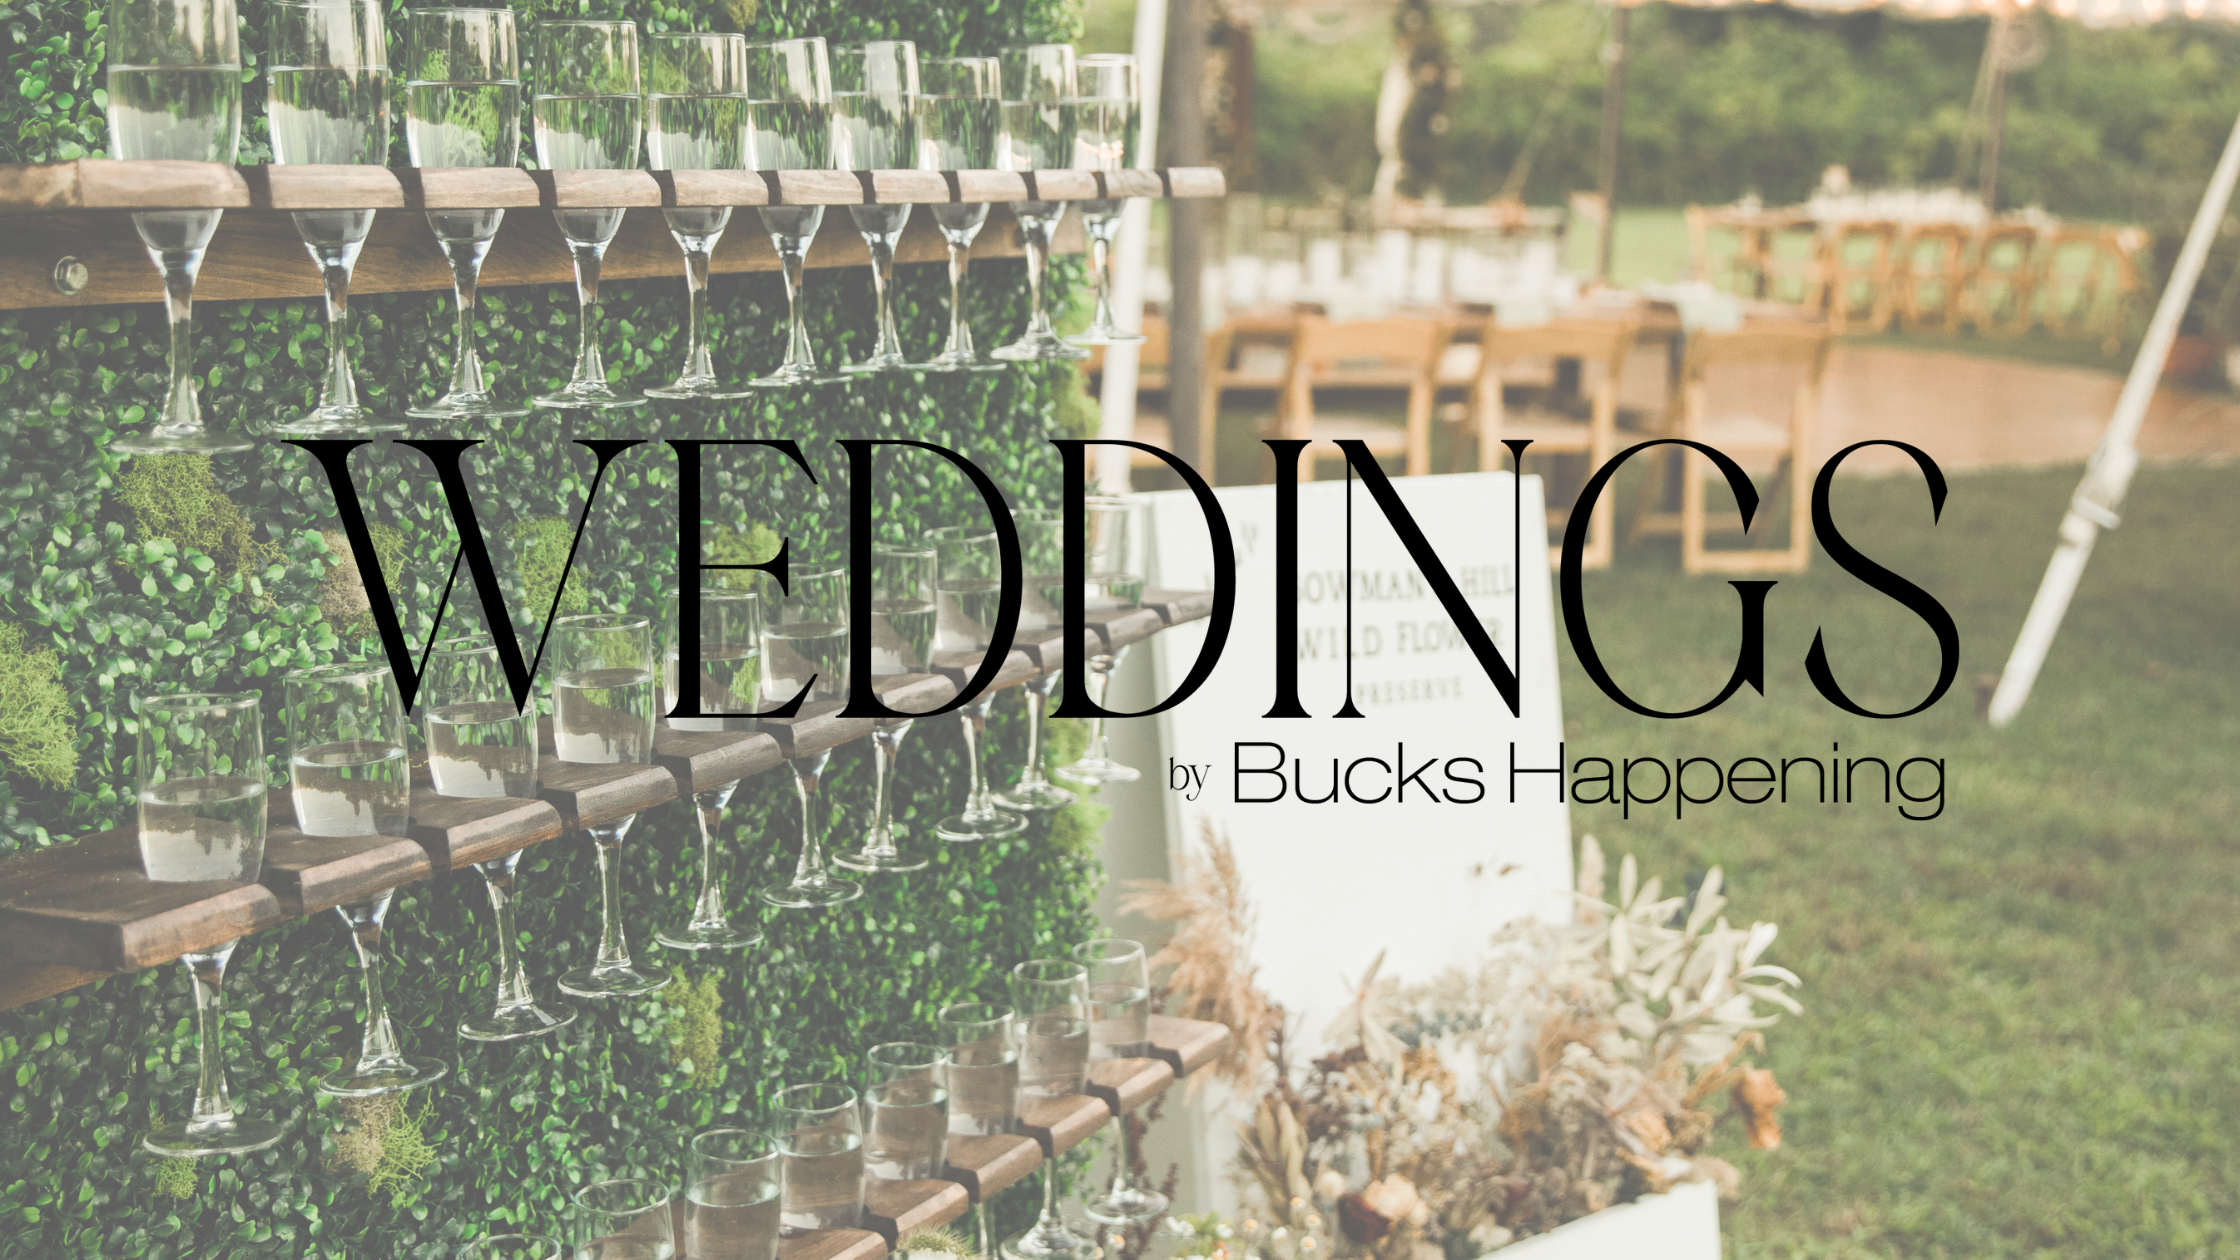 Weddings by Bucks Happening